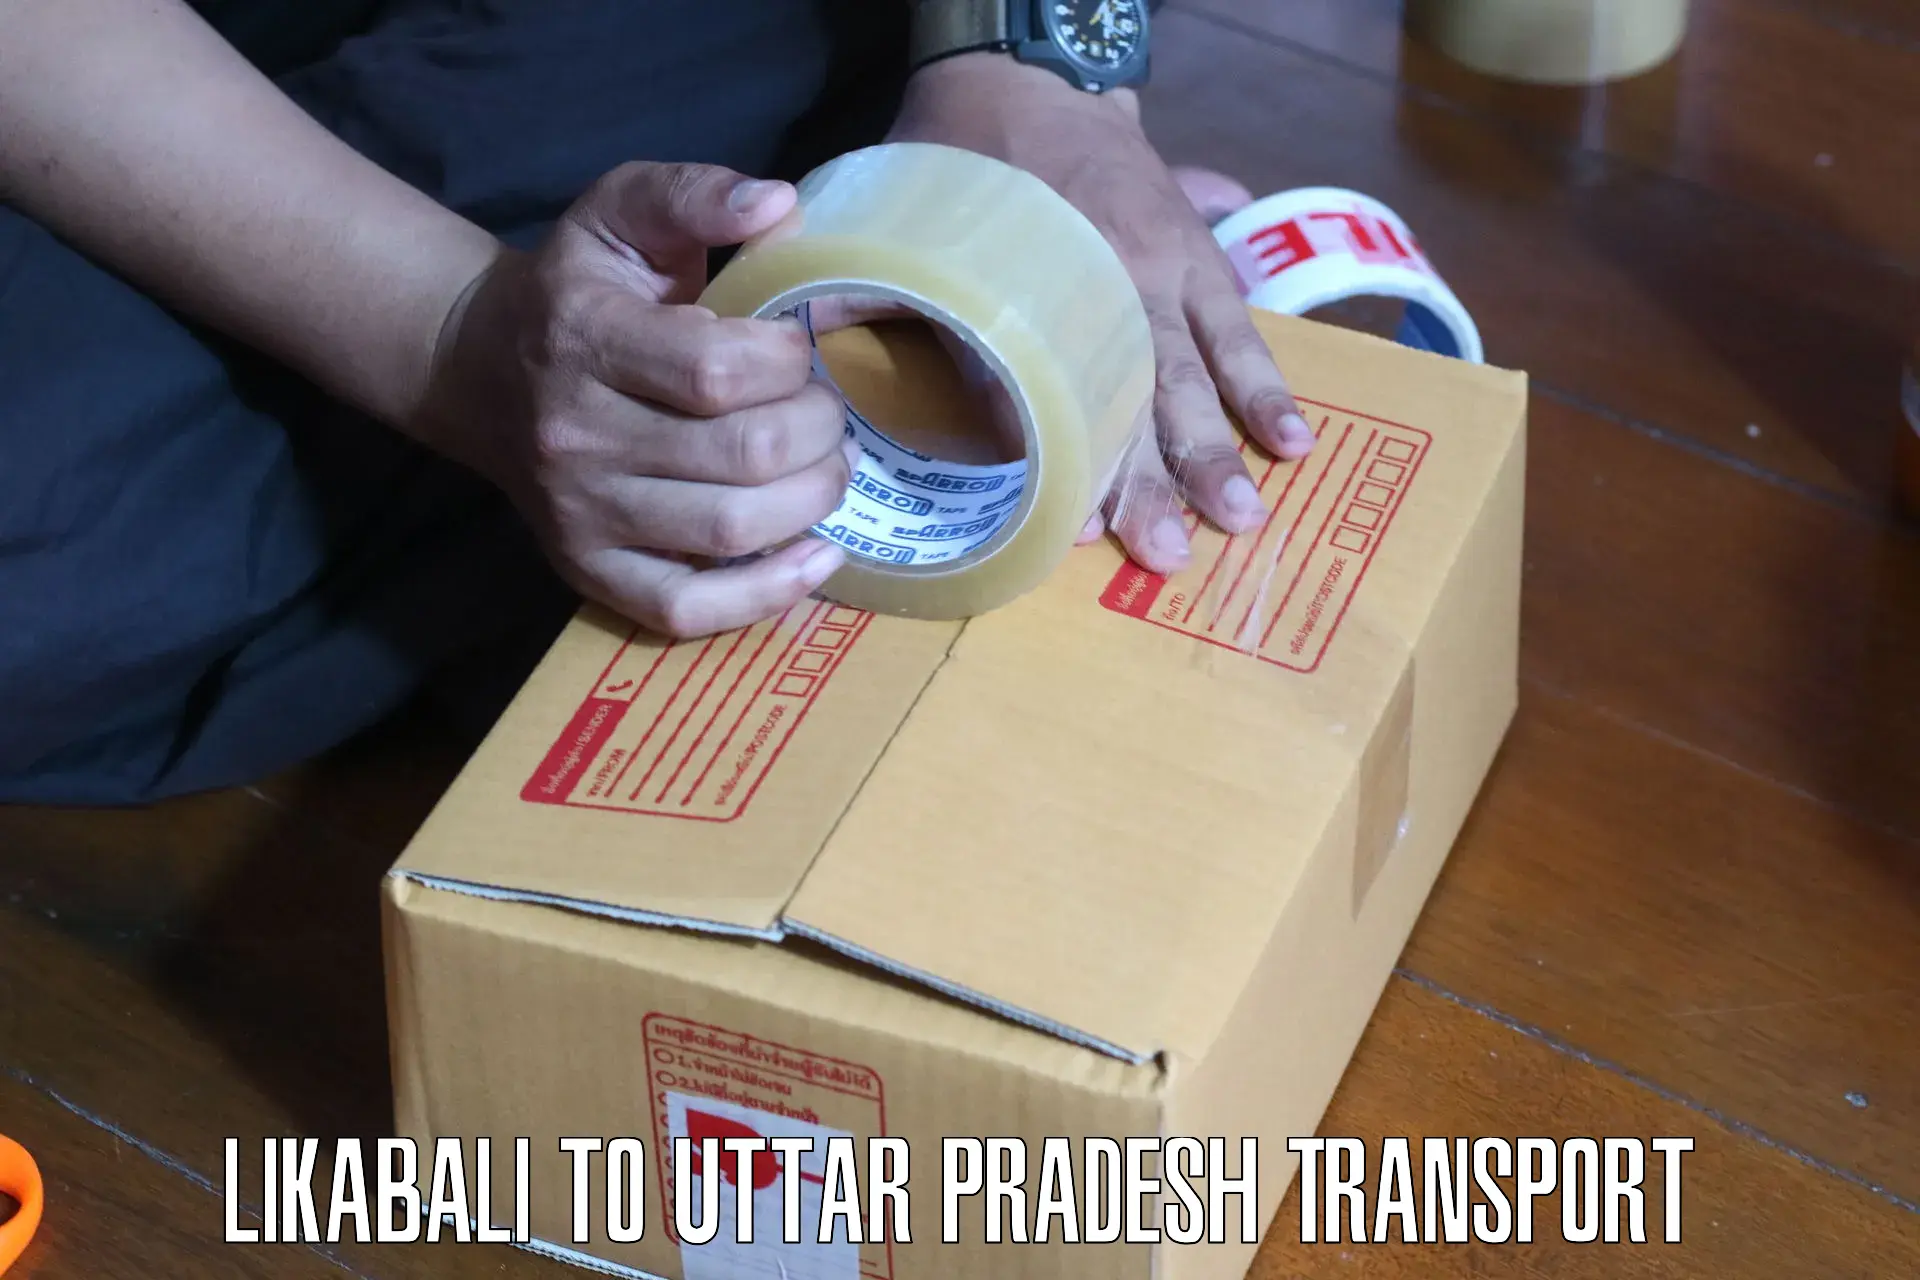 Parcel transport services Likabali to Uttar Pradesh